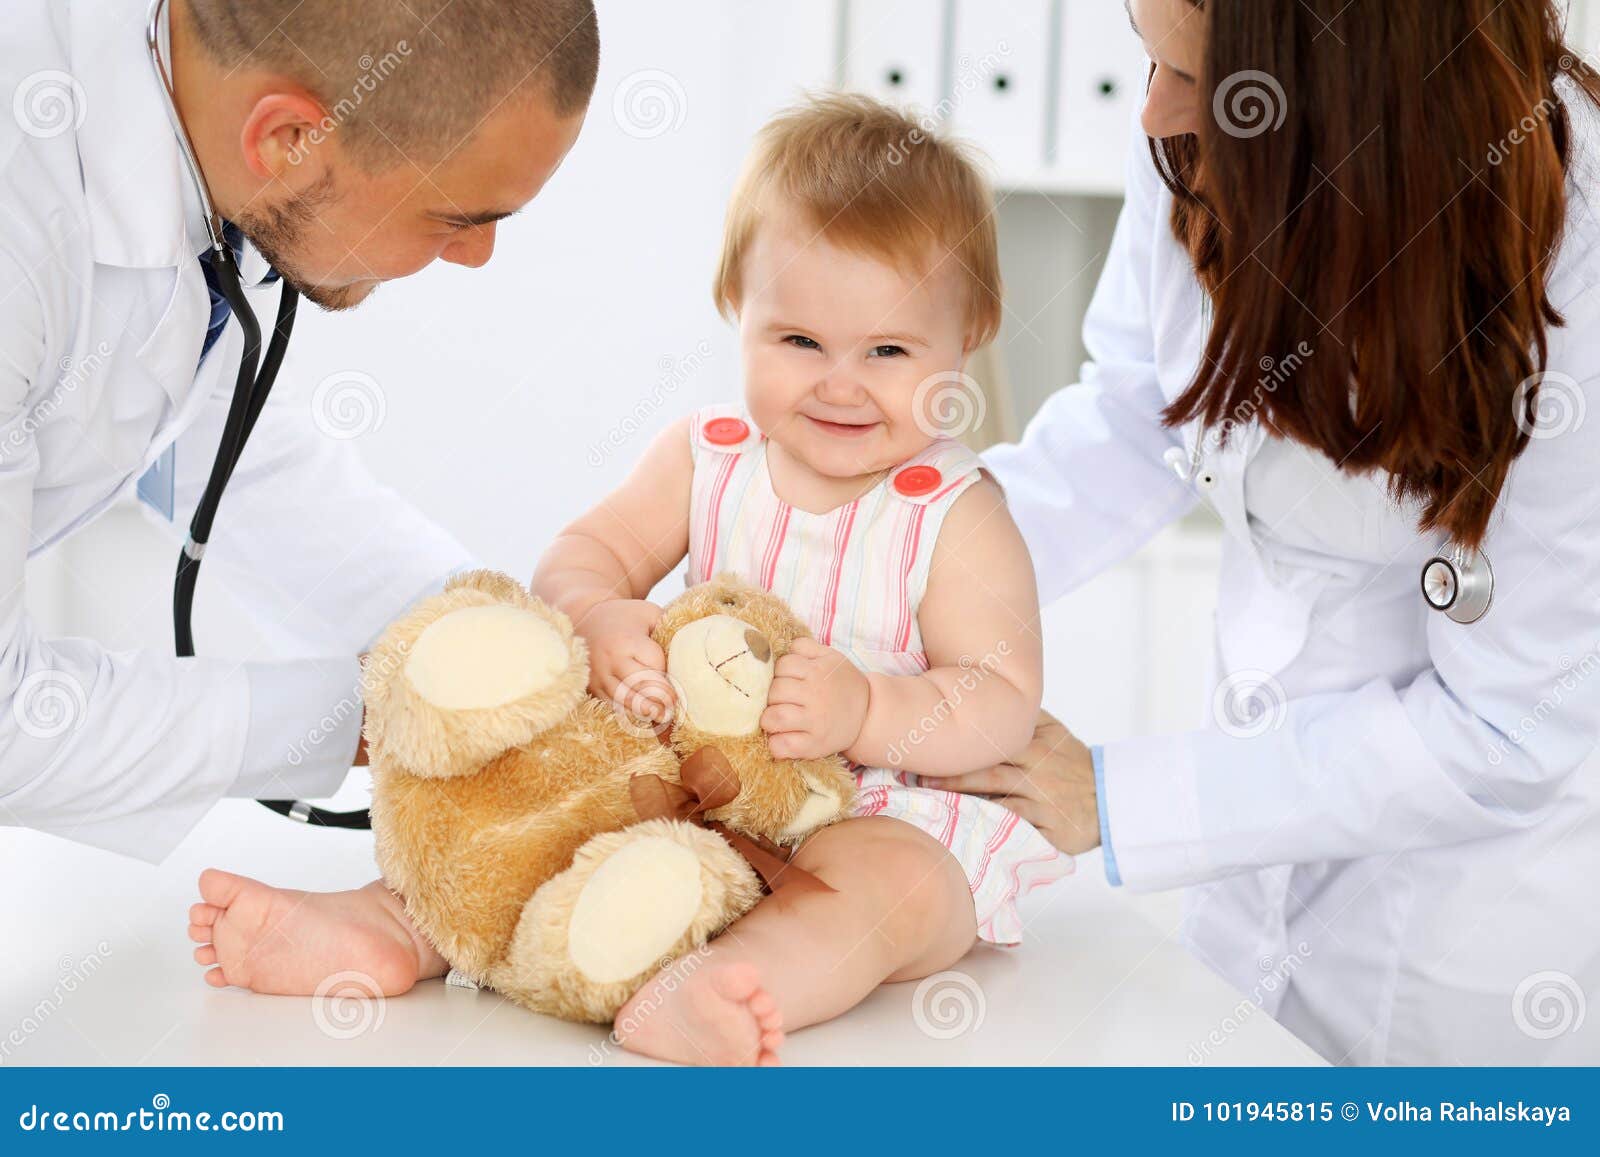 Pediatra examinando bebé con estetoscopio en el hospital. Atención